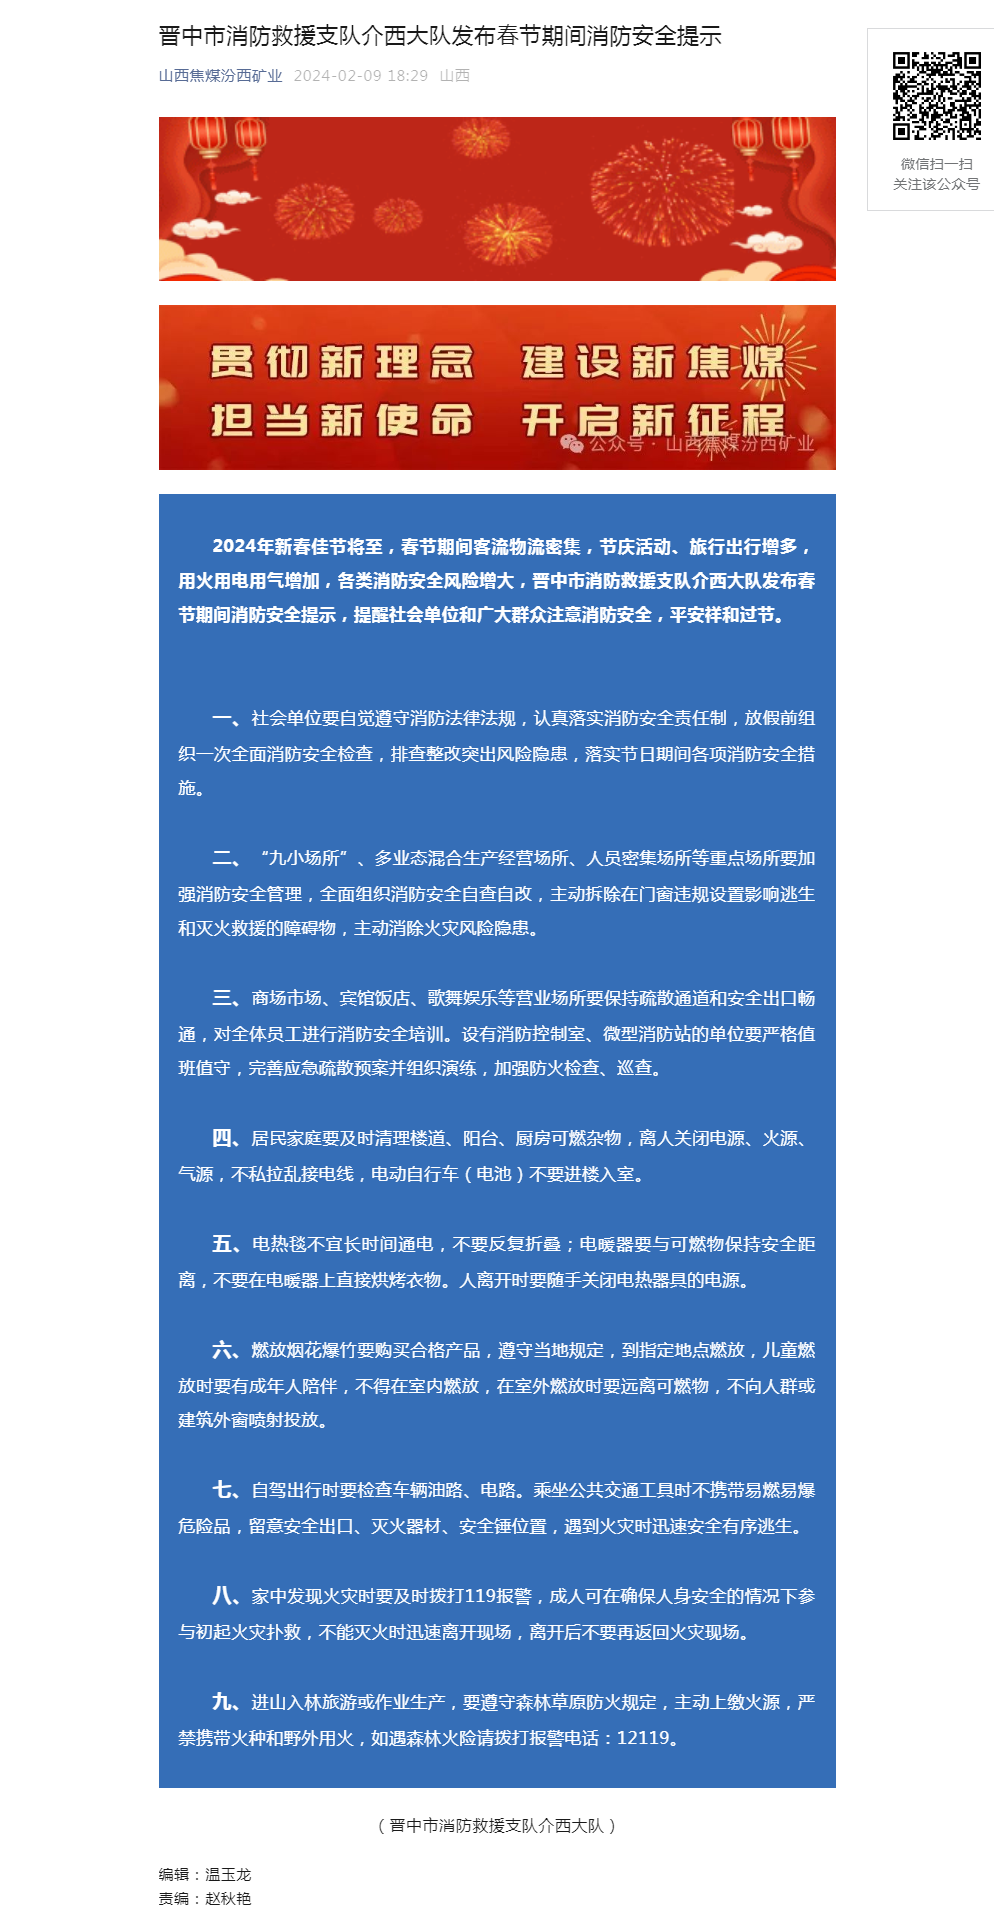 晋中市消防救援支队介西大队发布春节期间消防安全提示.png